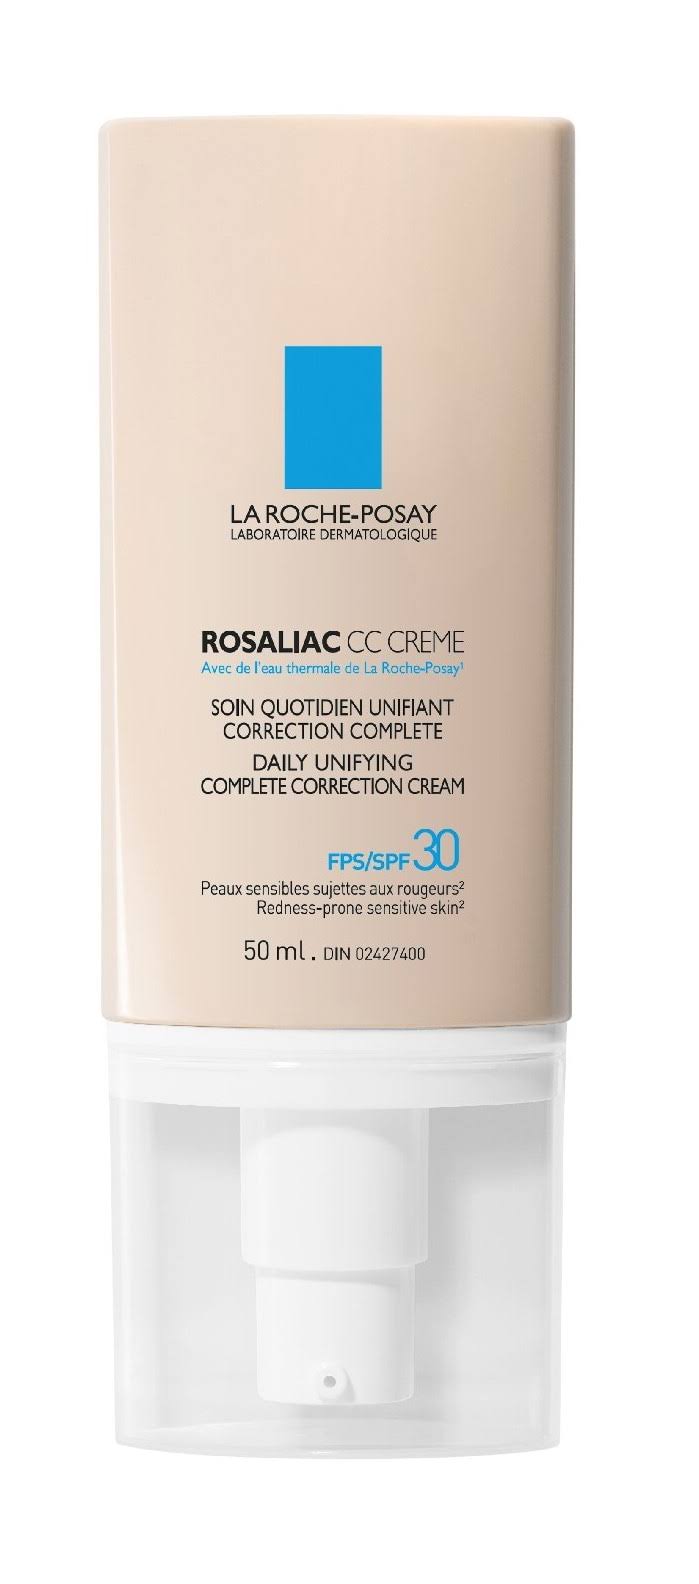 La Roche-Posay Rosaliac Complete Correction Cream - 50ml